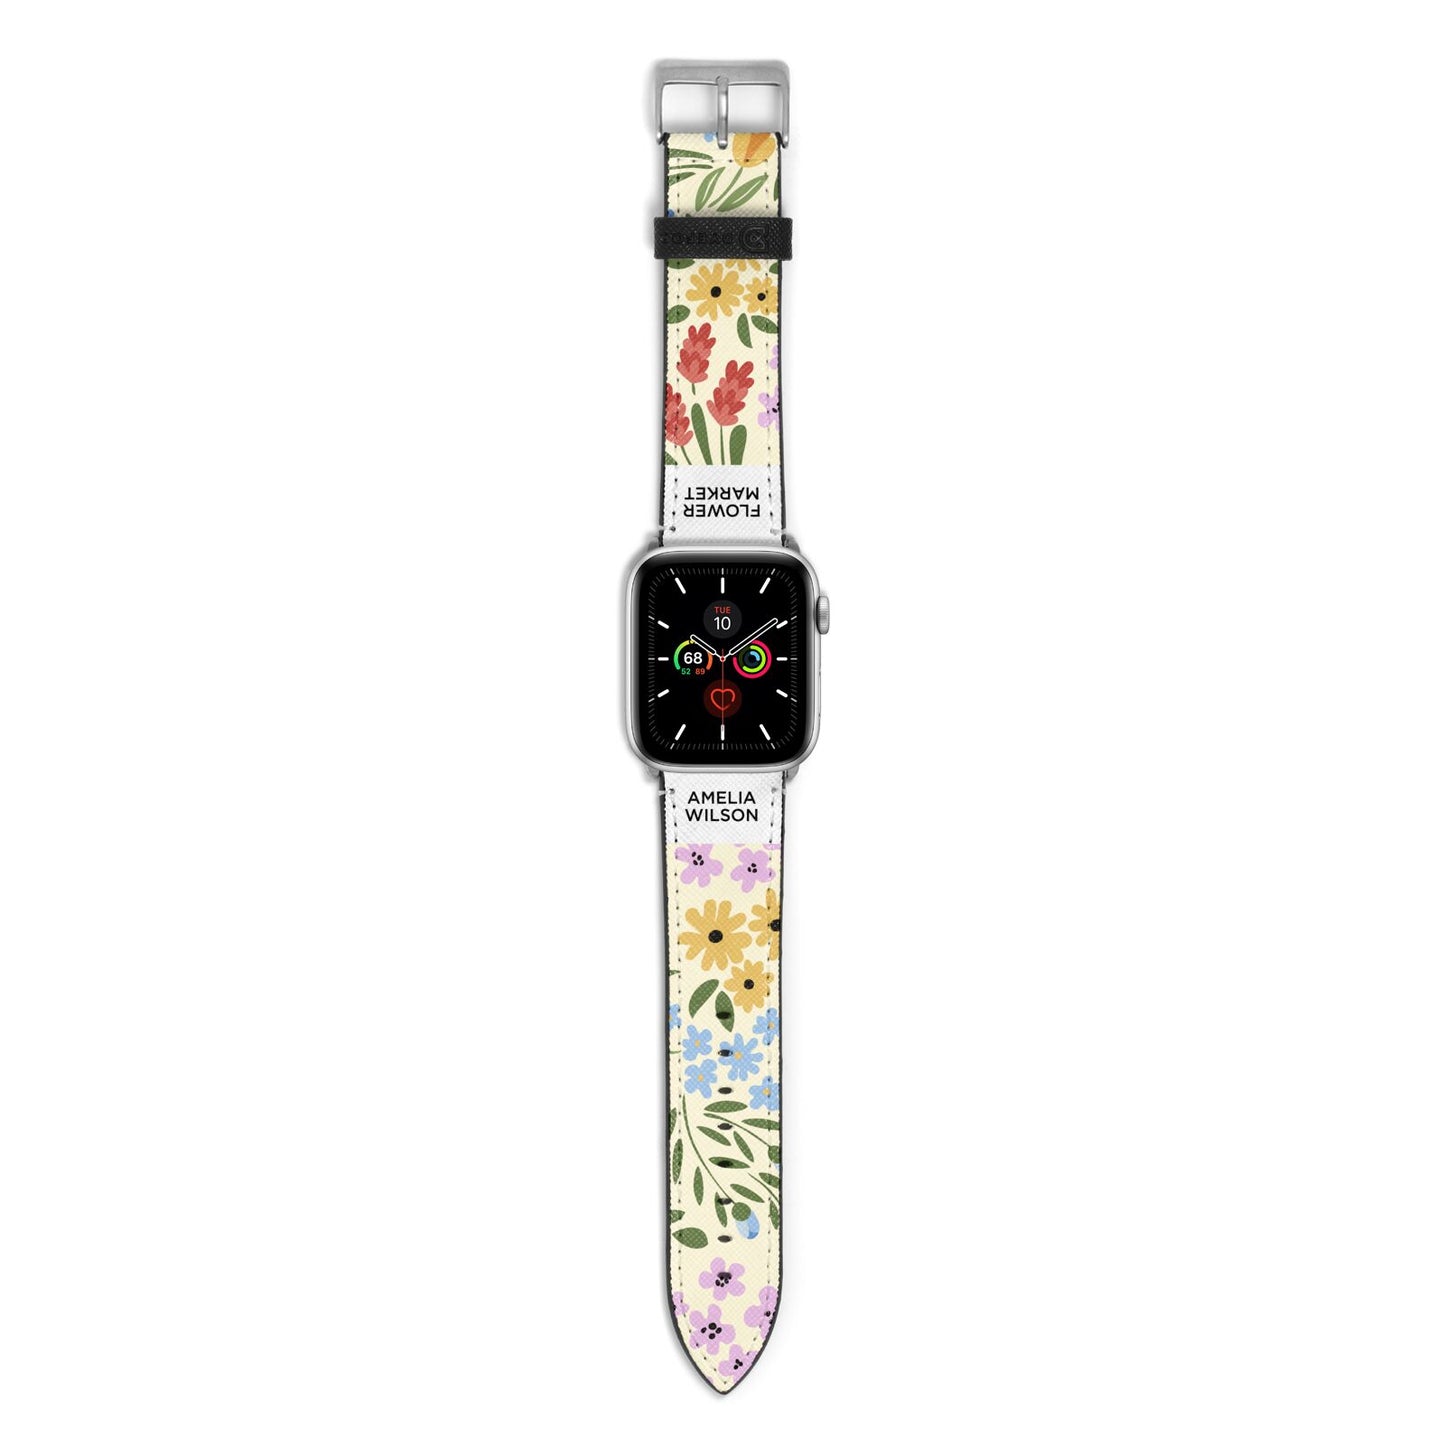 Paris Flower Market Apple Watch Strap with Silver Hardware